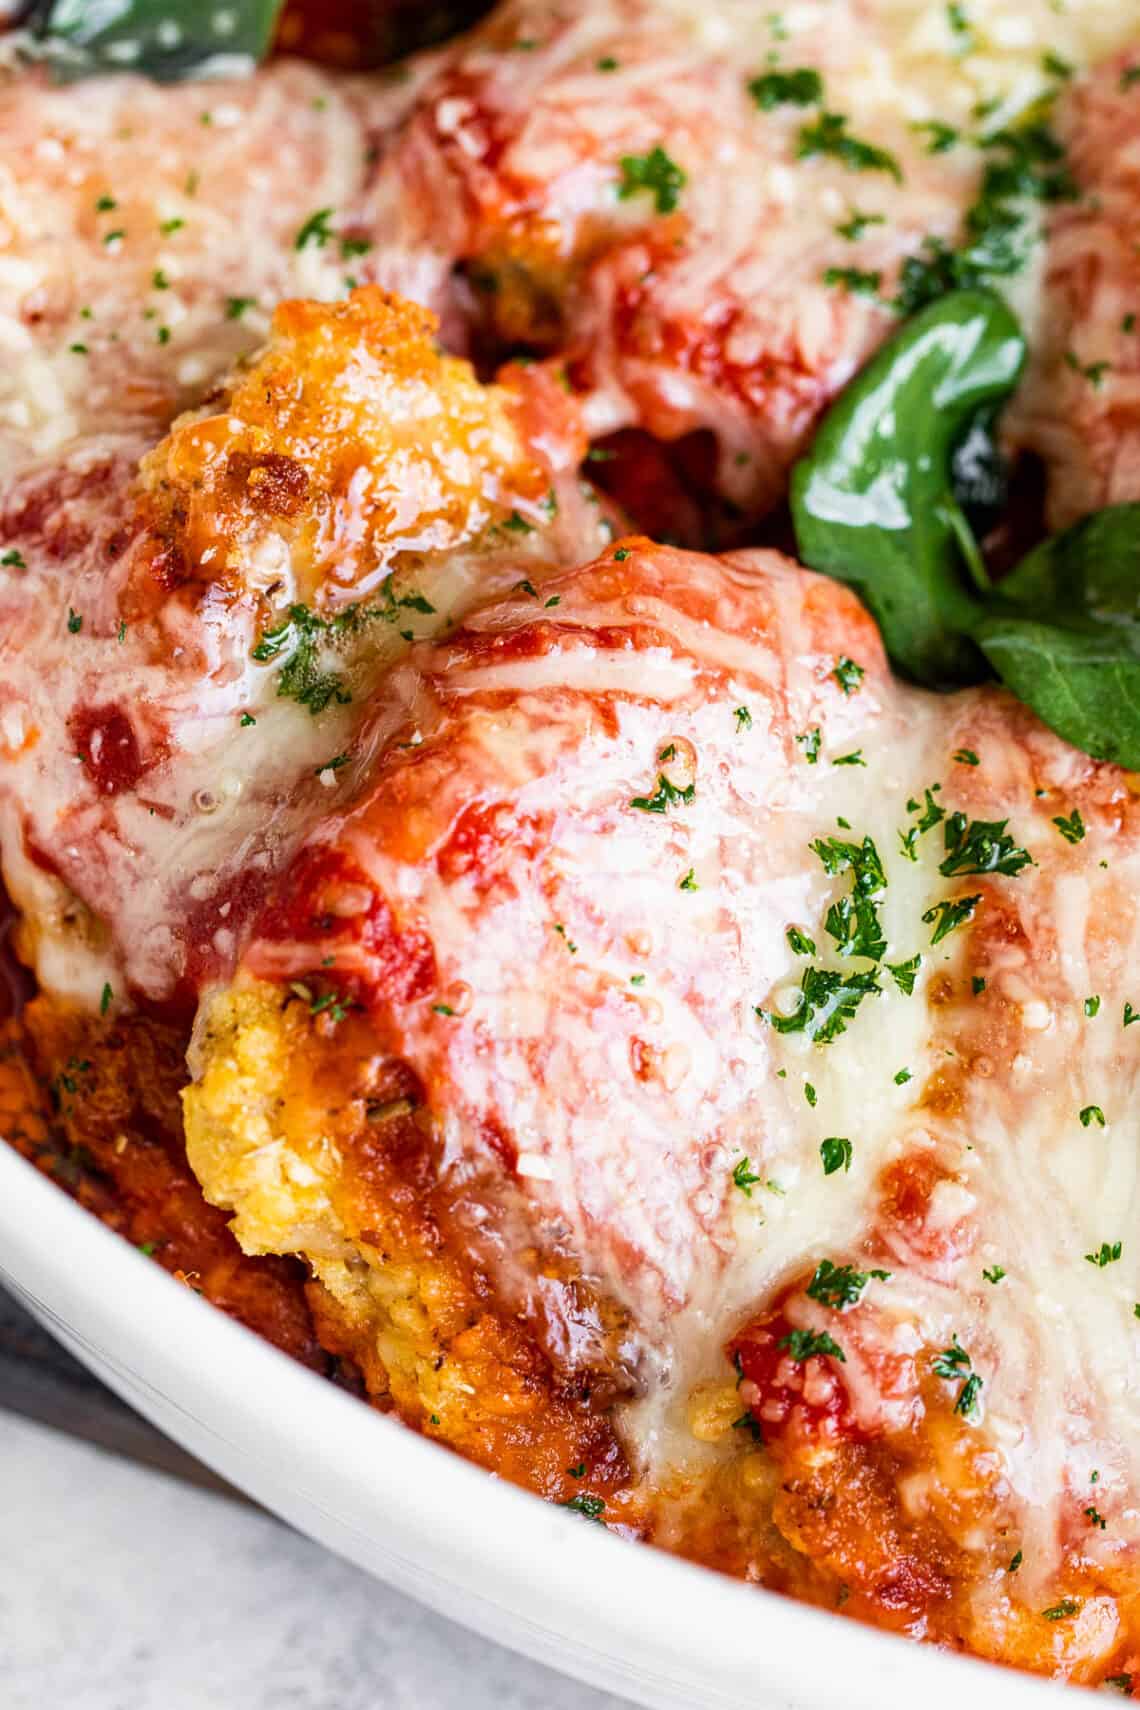 The Best Pork Dinner Recipe | How to Make Pork Parmigiana